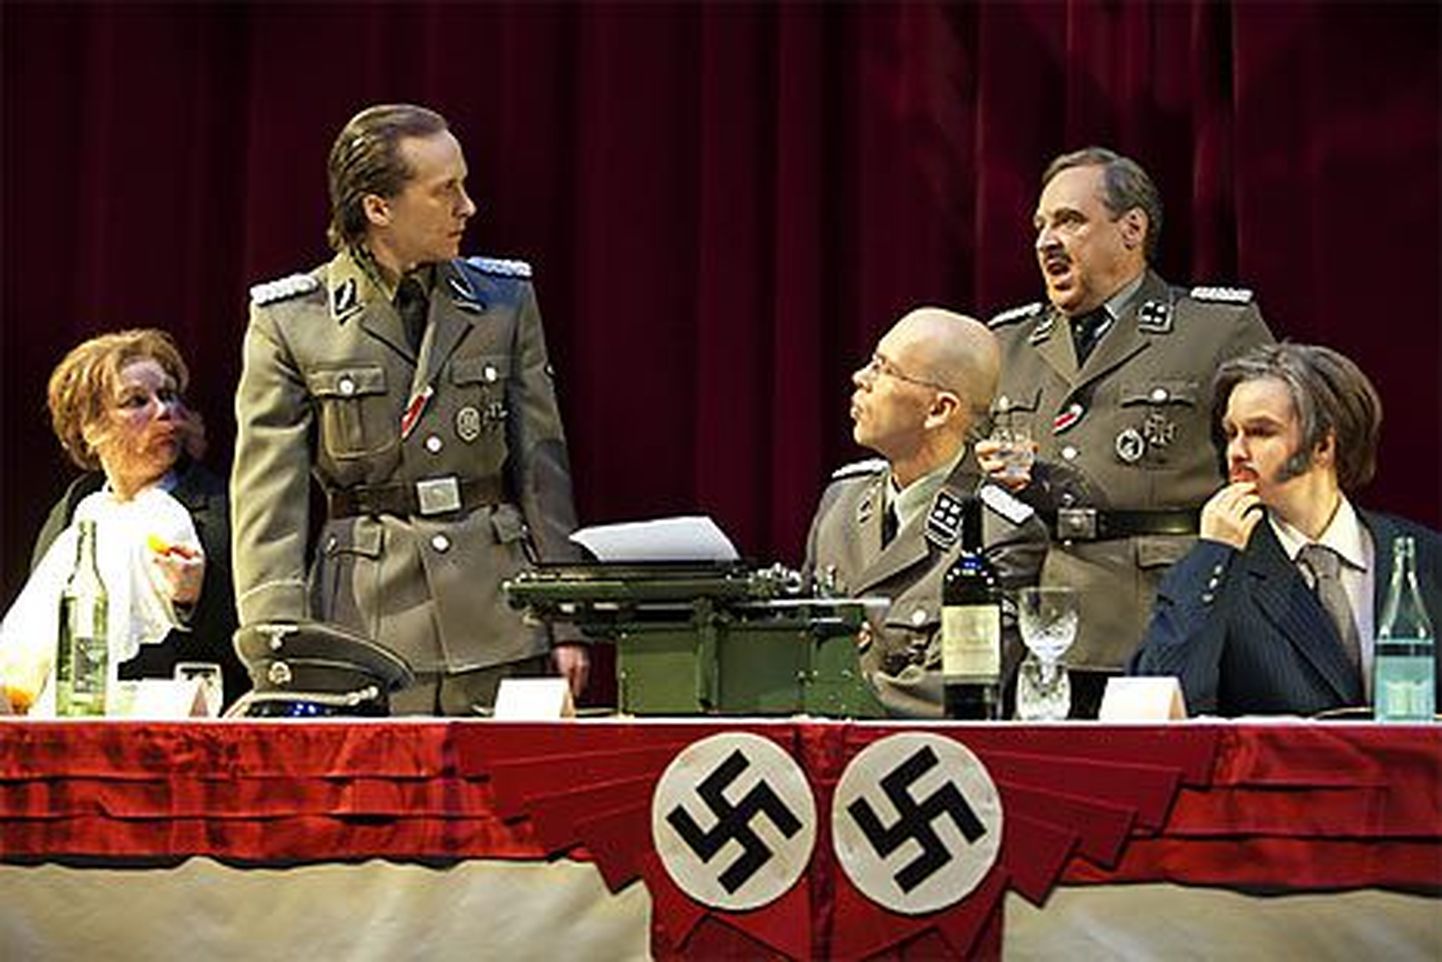 Lappeenranta linnateatri näitlejad esitamas näidendit "Mina olen Adolf Eichmann".